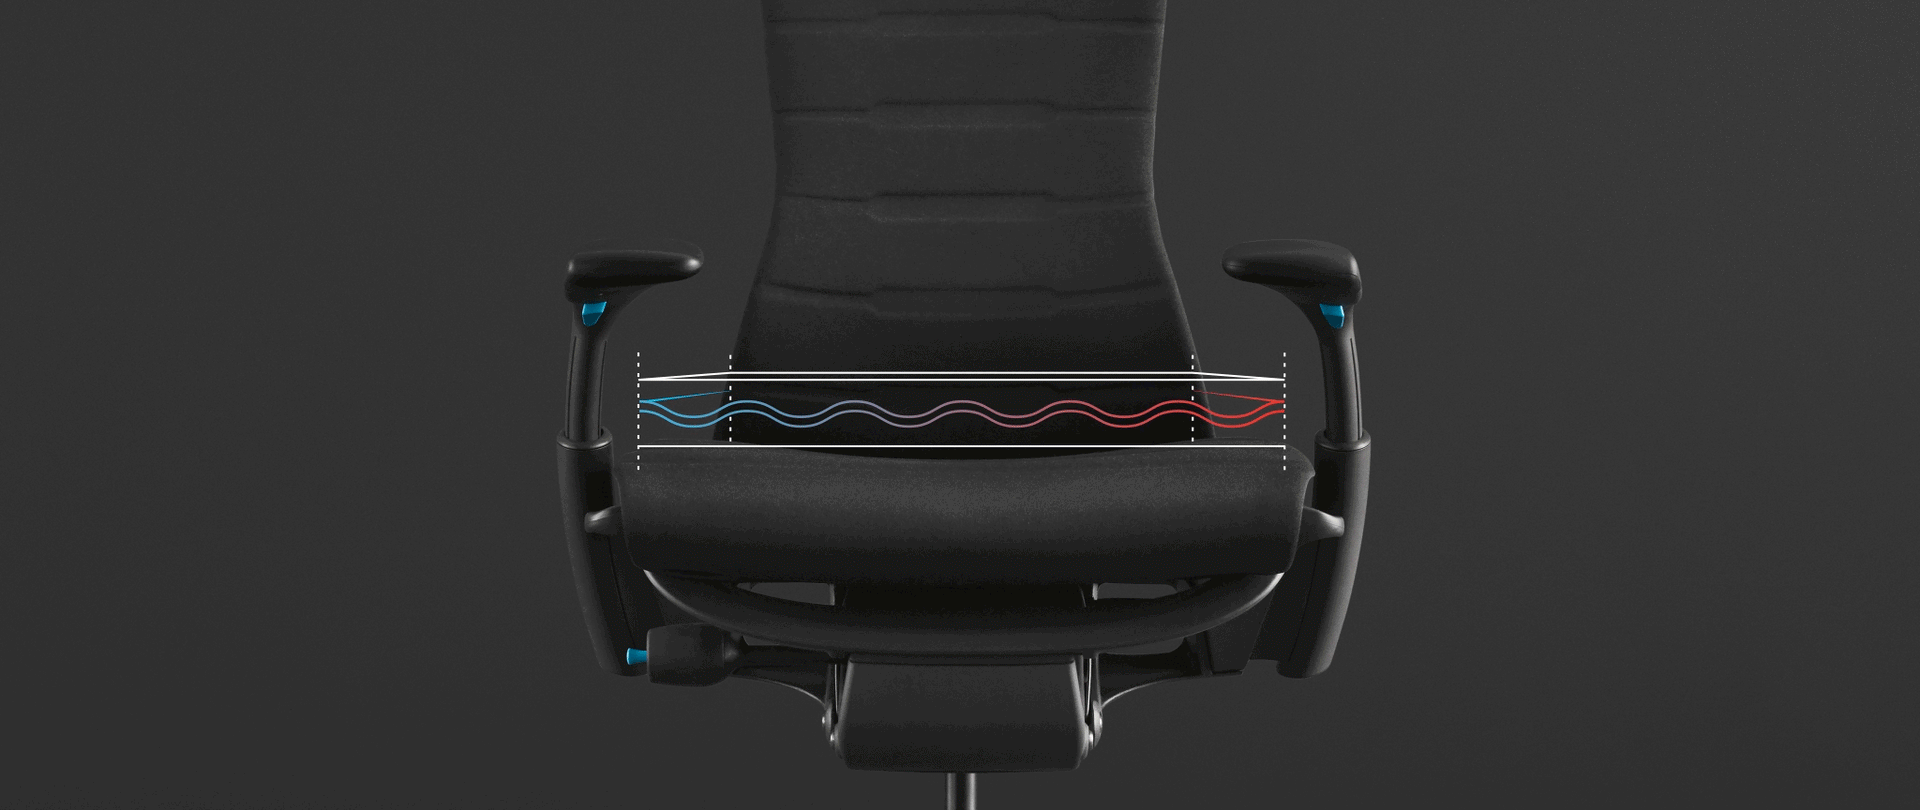 검은색 배경의 의자 사진 위에 입힌, Embody Gaming Chair 시트에서 새로운 쿨링 폼을 강조하는 애니메이션.